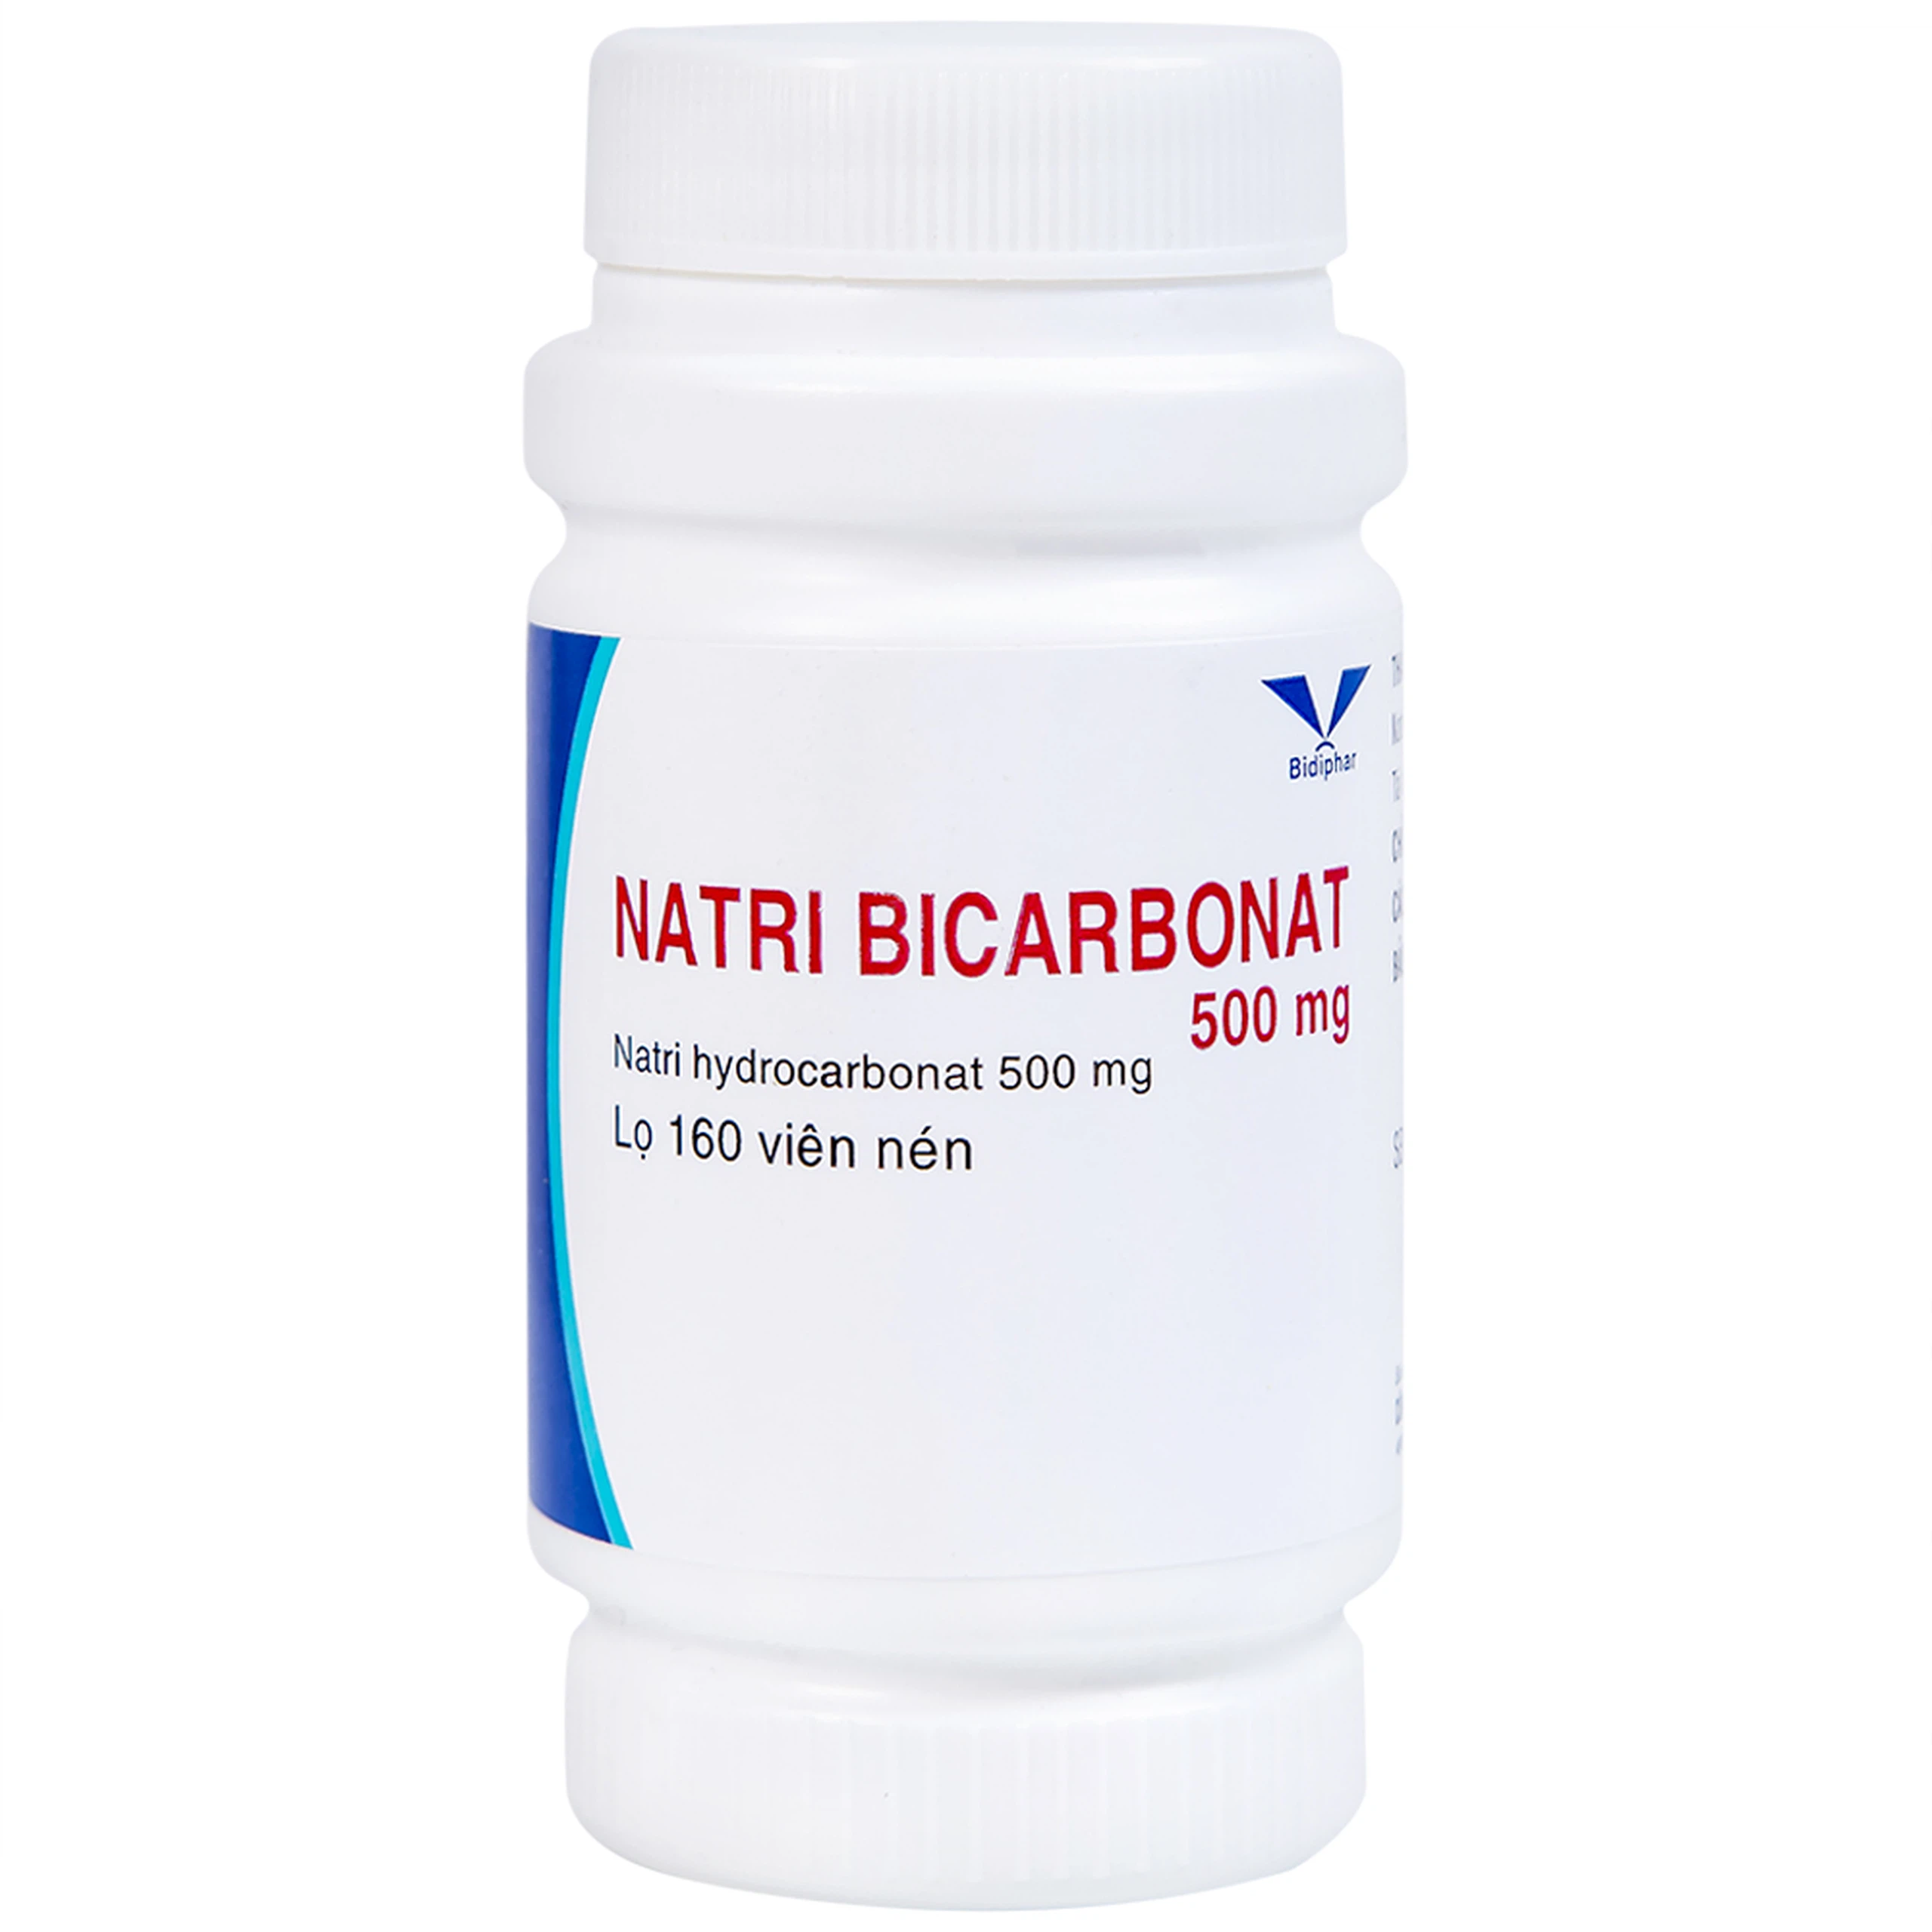 Thuốc Natri Bicarbonat 500mg Bidiphar điều trị nhiễm toan chuyển hóa, khó tiêu hóa, ợ nóng (160 viên)